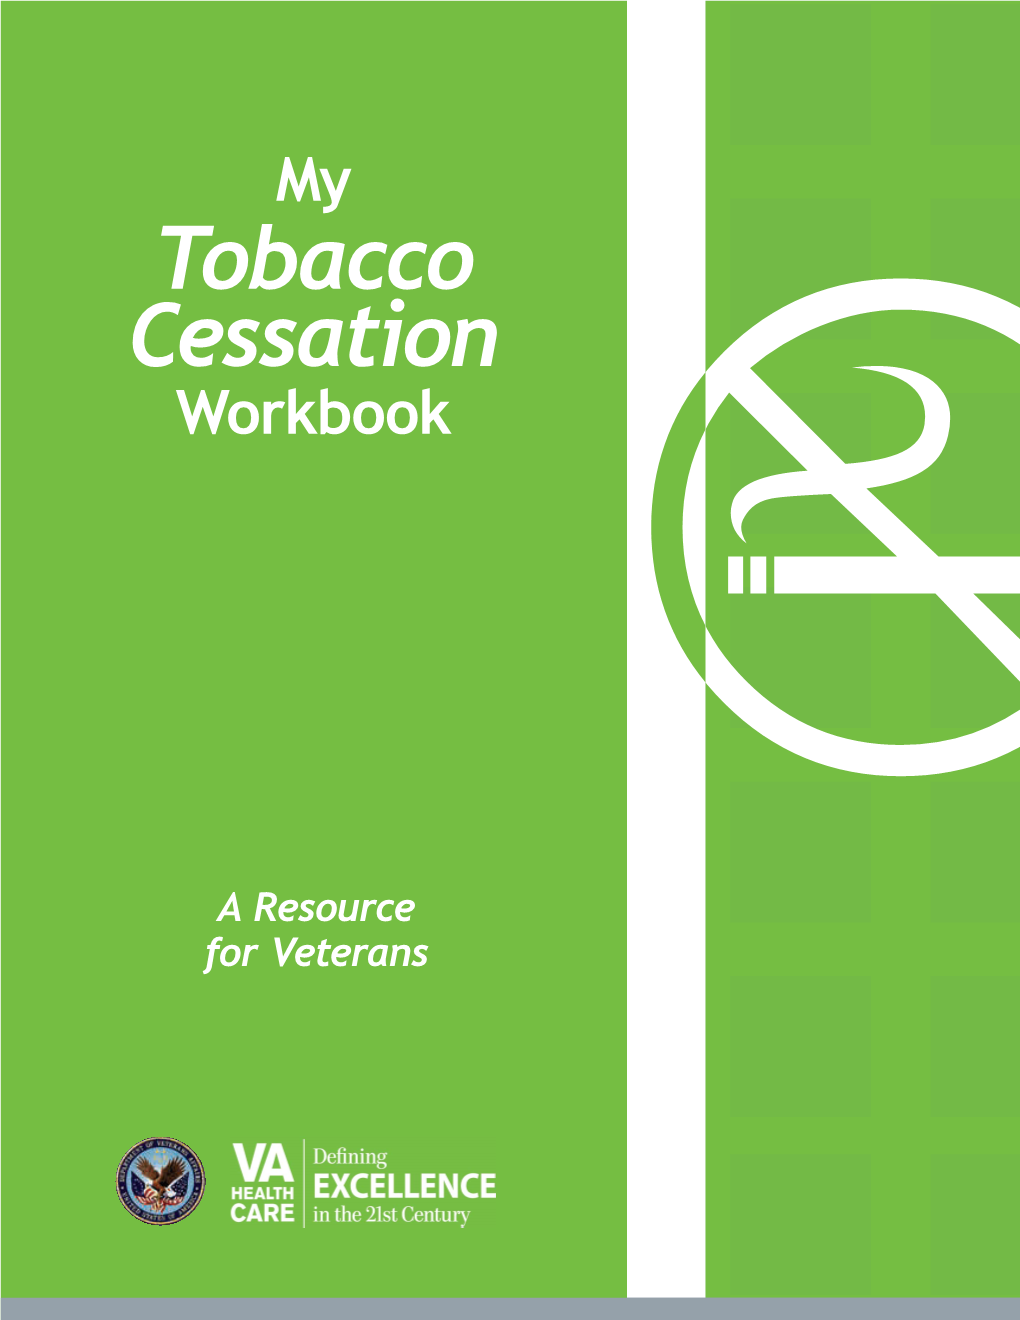 My Tobacco Cessation Workbook